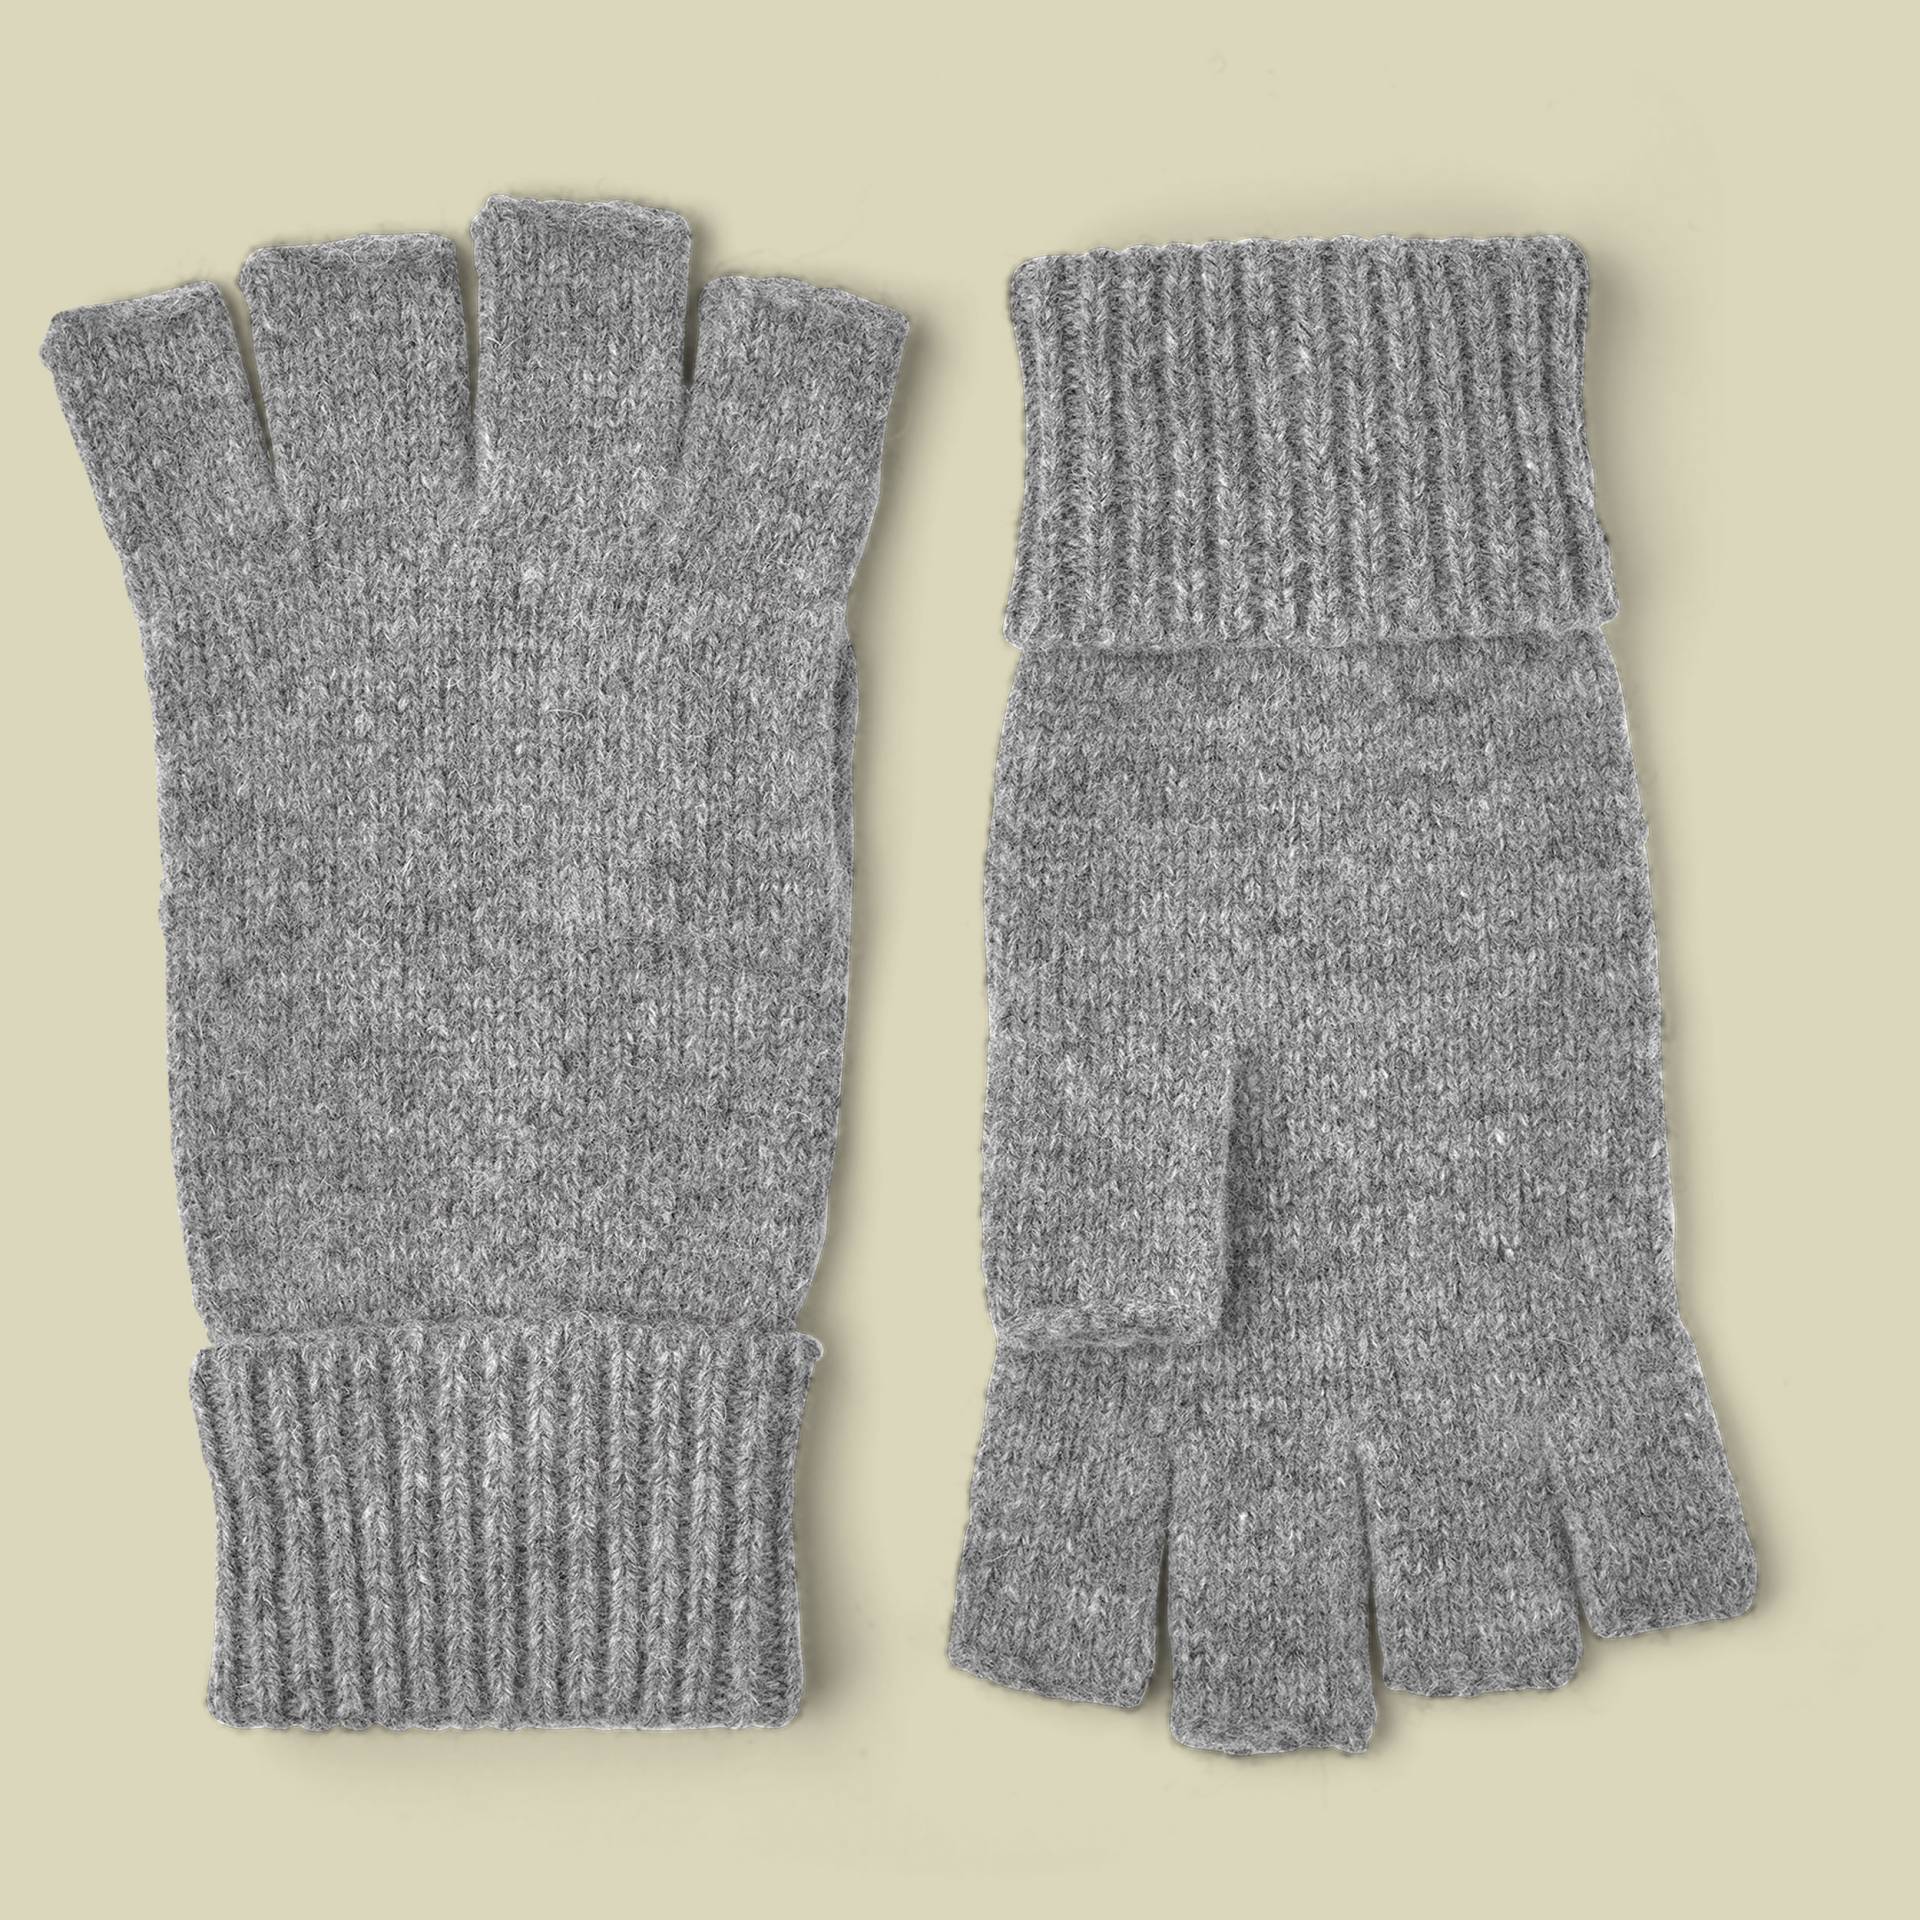 Basic Wool Half Finger Größe 10 Farbe grey von Hestra